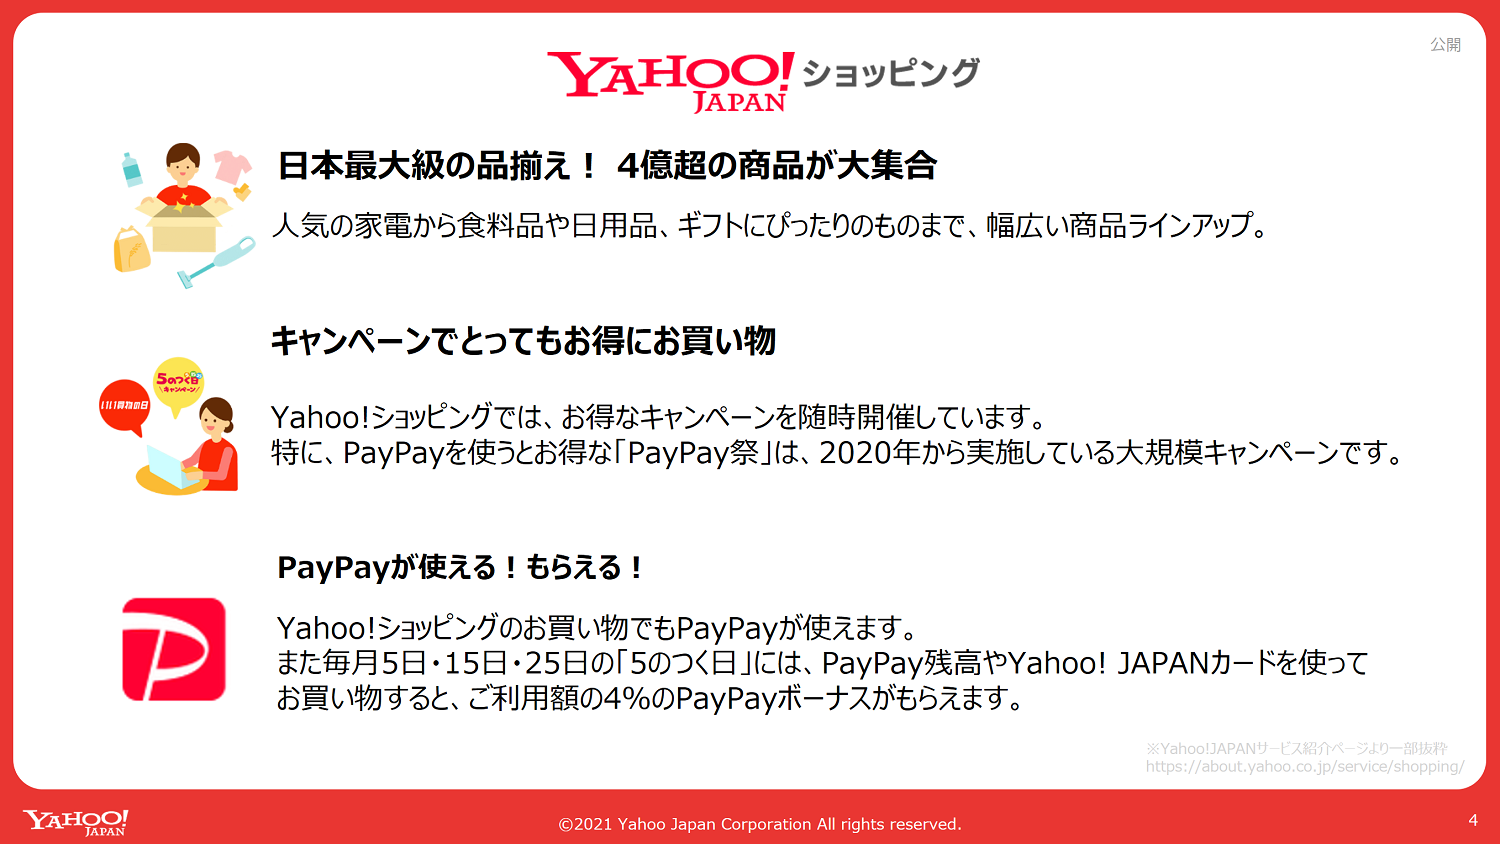 Yahoo!ショッピングの図。